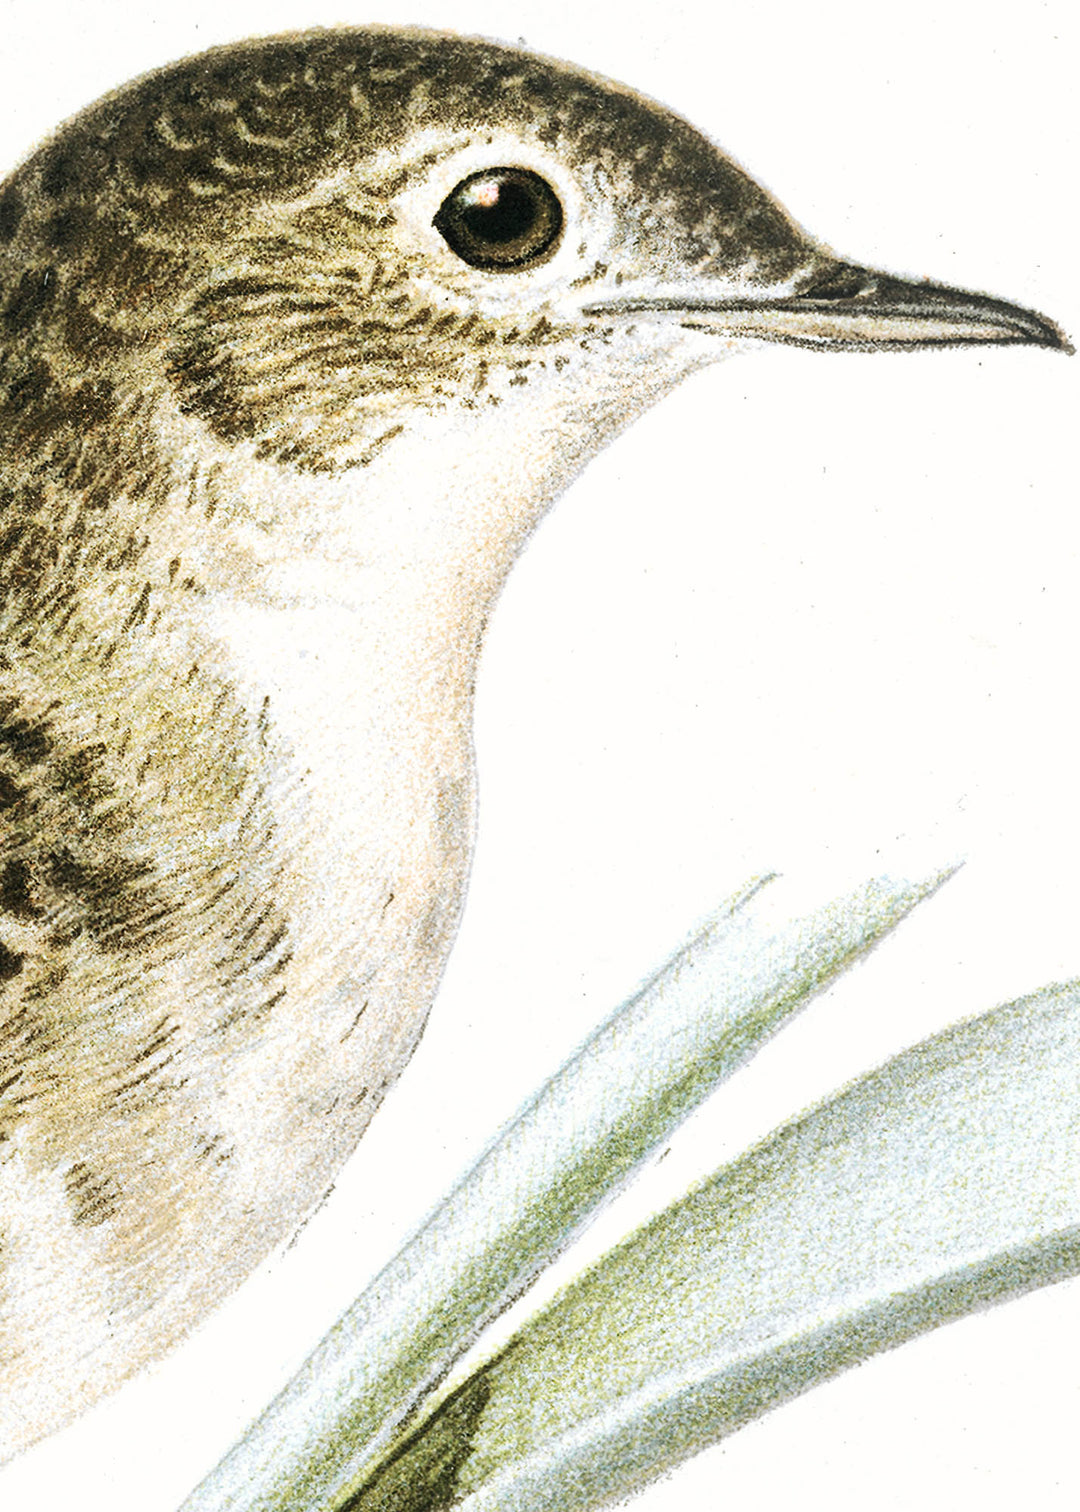 Fågeln Gräshoppsångare på klassisk vintage poster/affisch